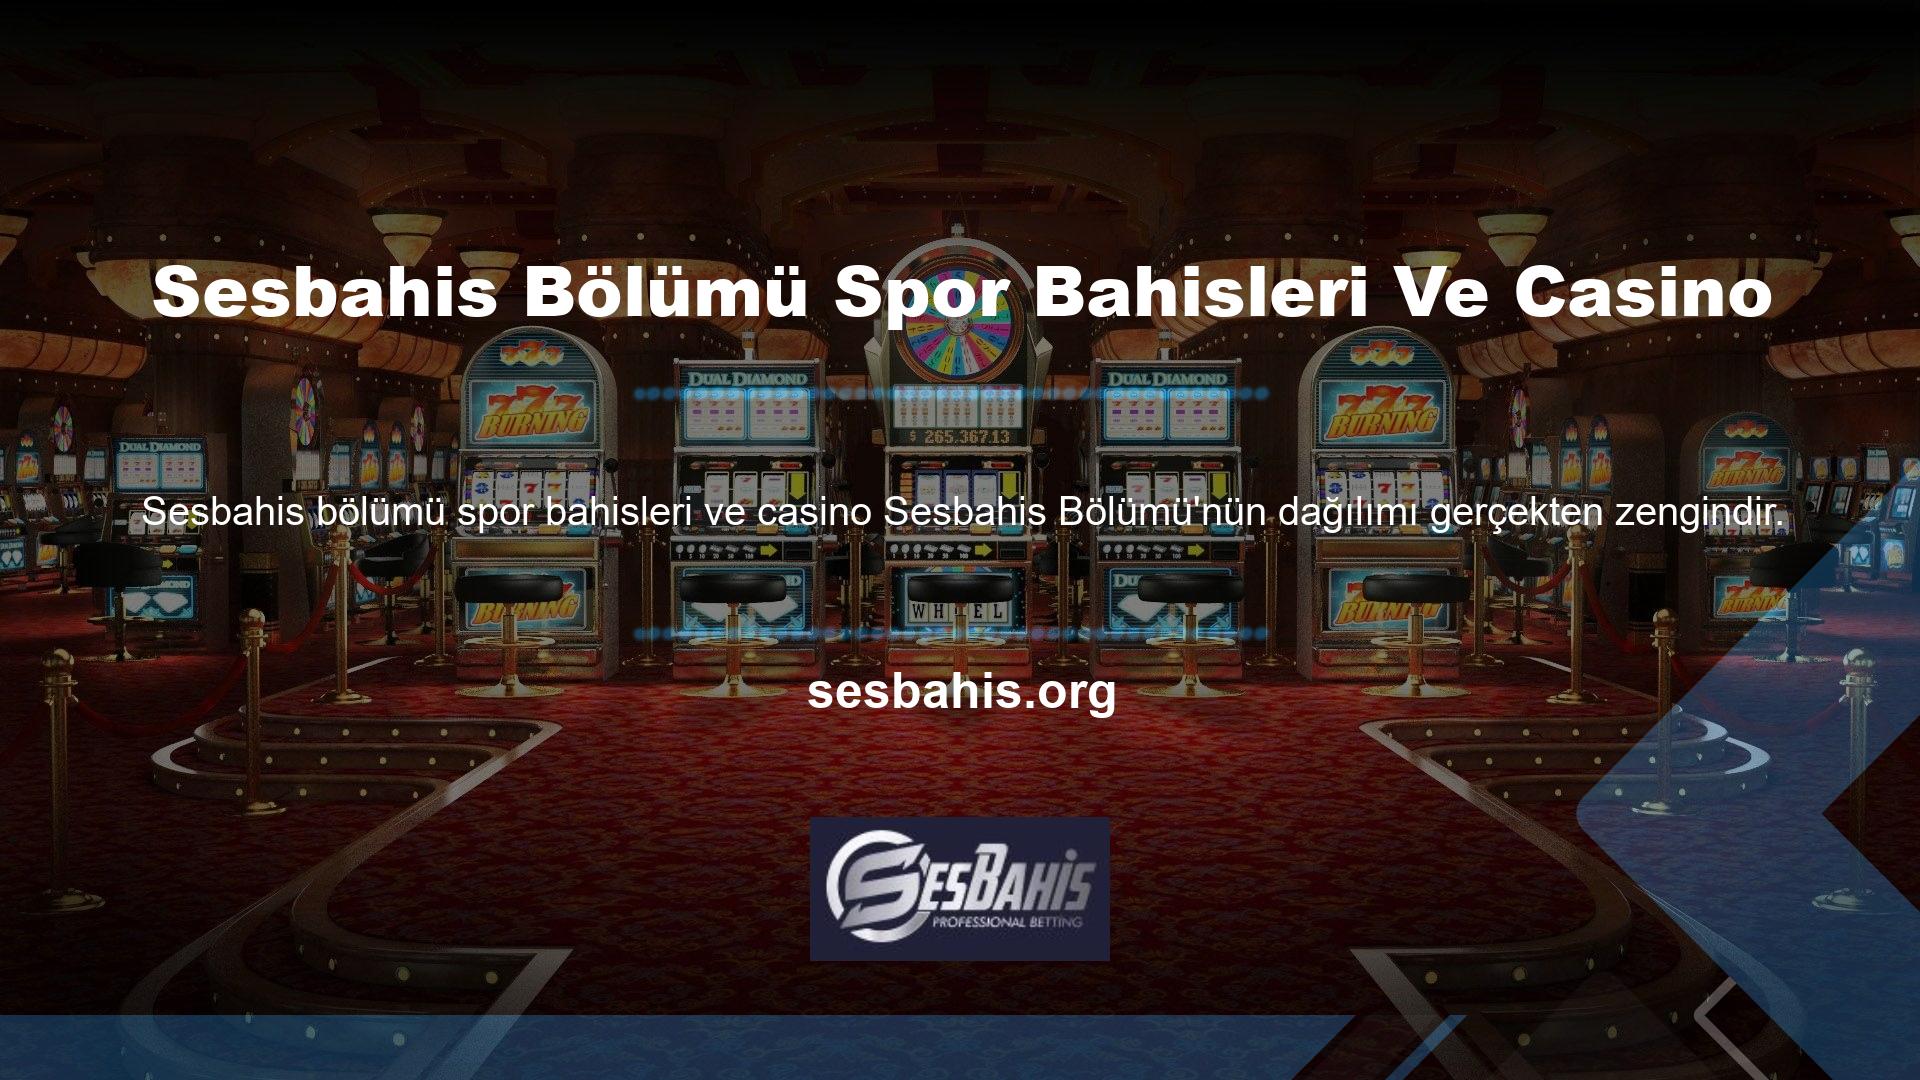 Casino yayınları, canlı casinolar, slot makineleri, sanal oyunlar ve poker gibi çeşitli spor bahisleri ve canlı bahis sistemlerine rağmen